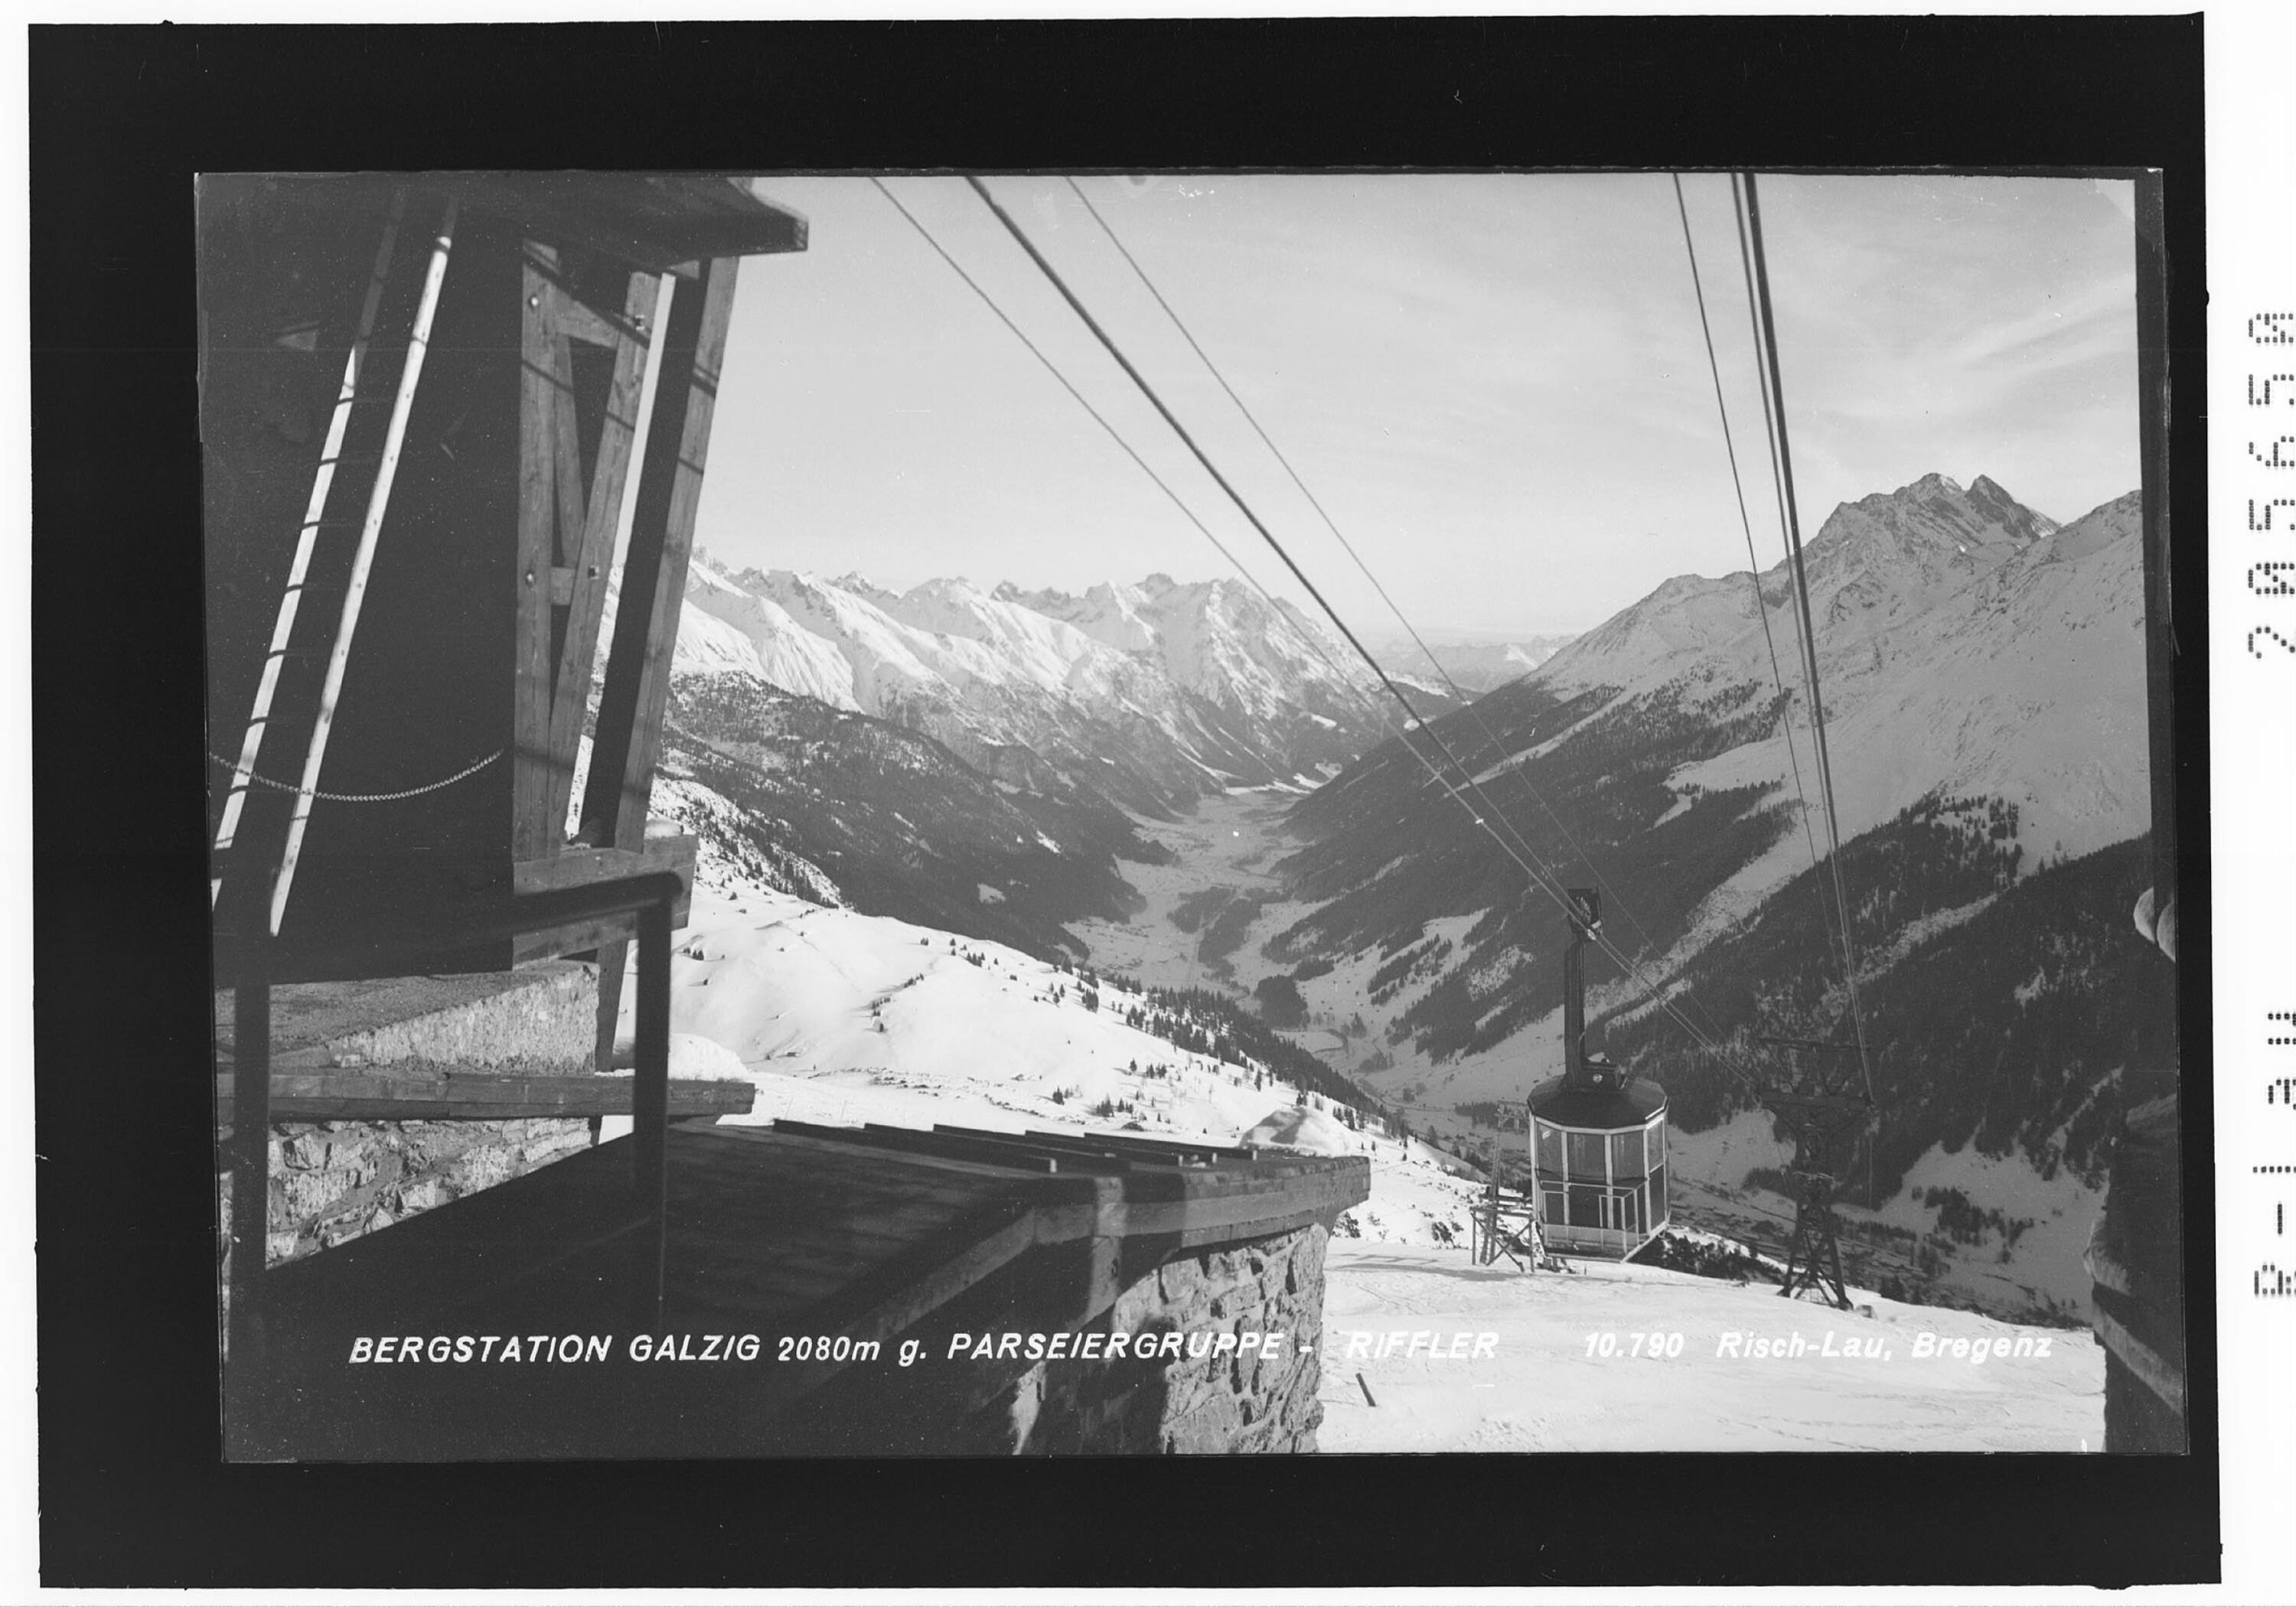 Bergstation Galzig 2080 m gegen Parseiergruppe - Riffler></div>


    <hr>
    <div class=